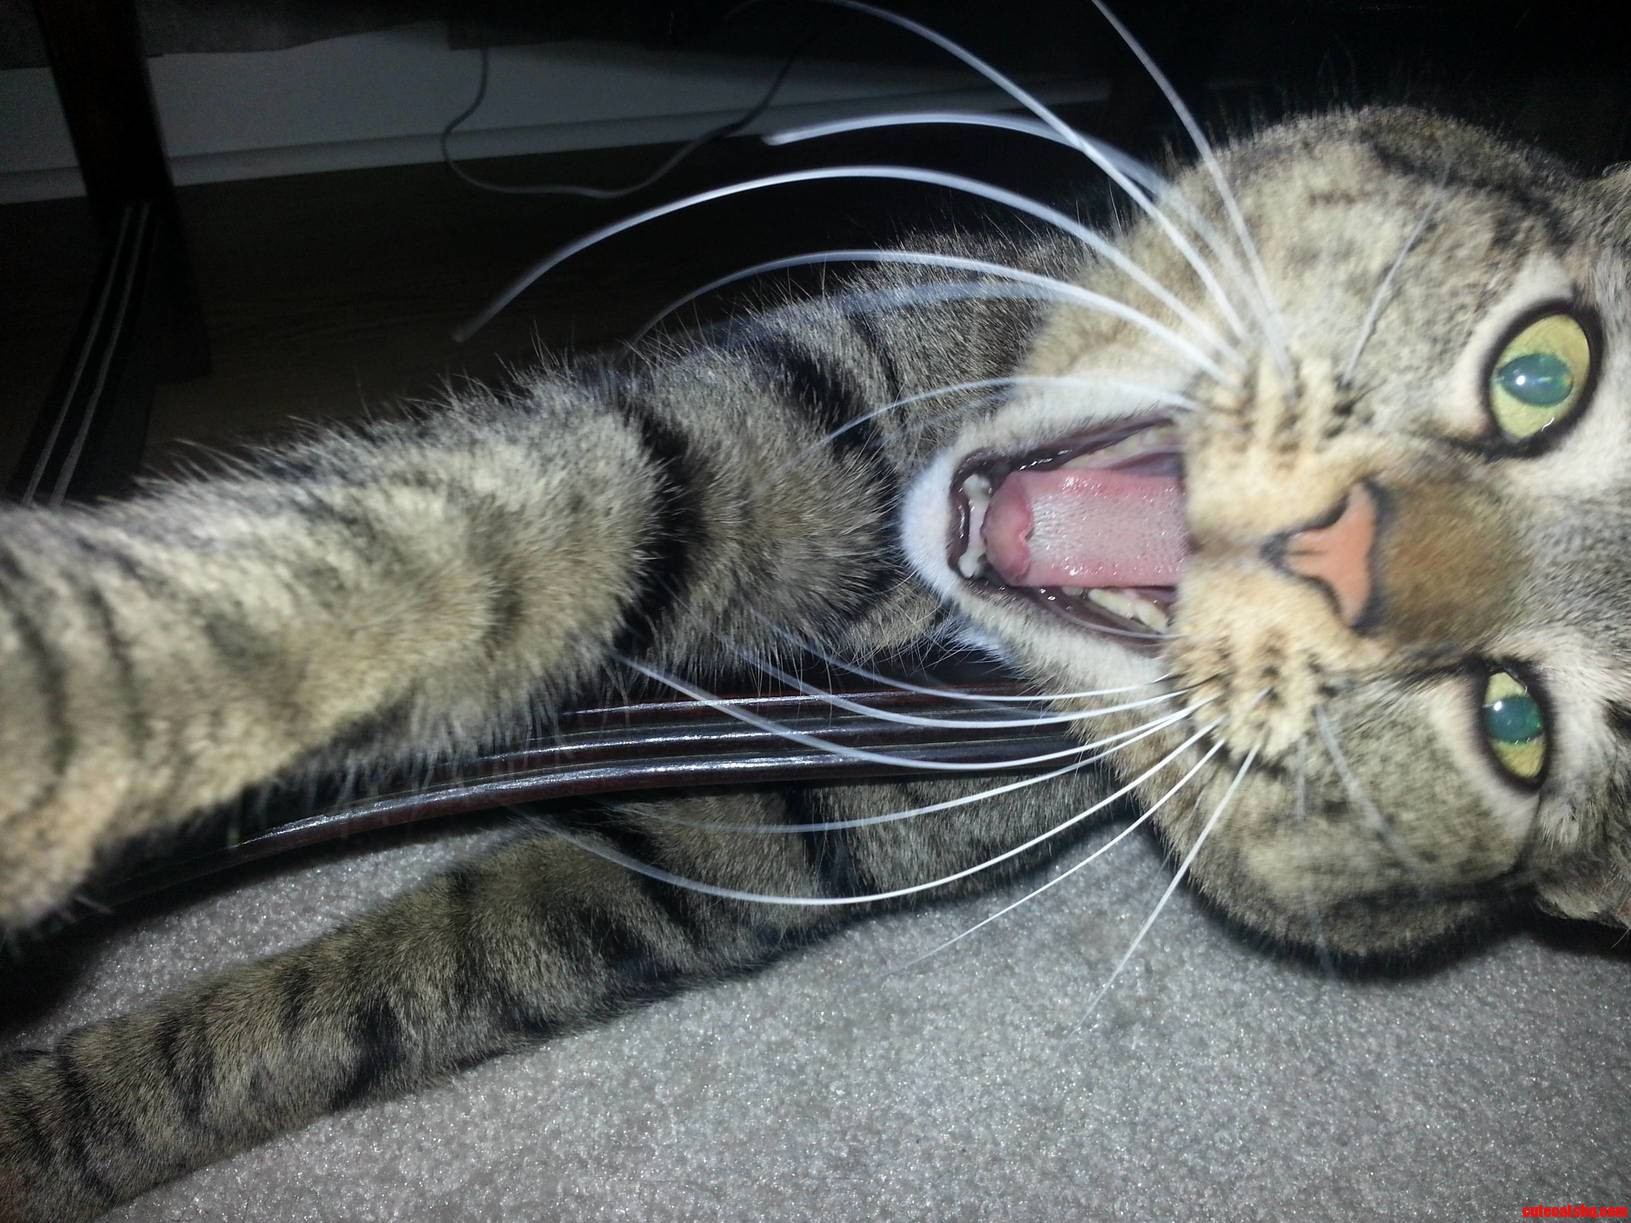 A ferocious yawn